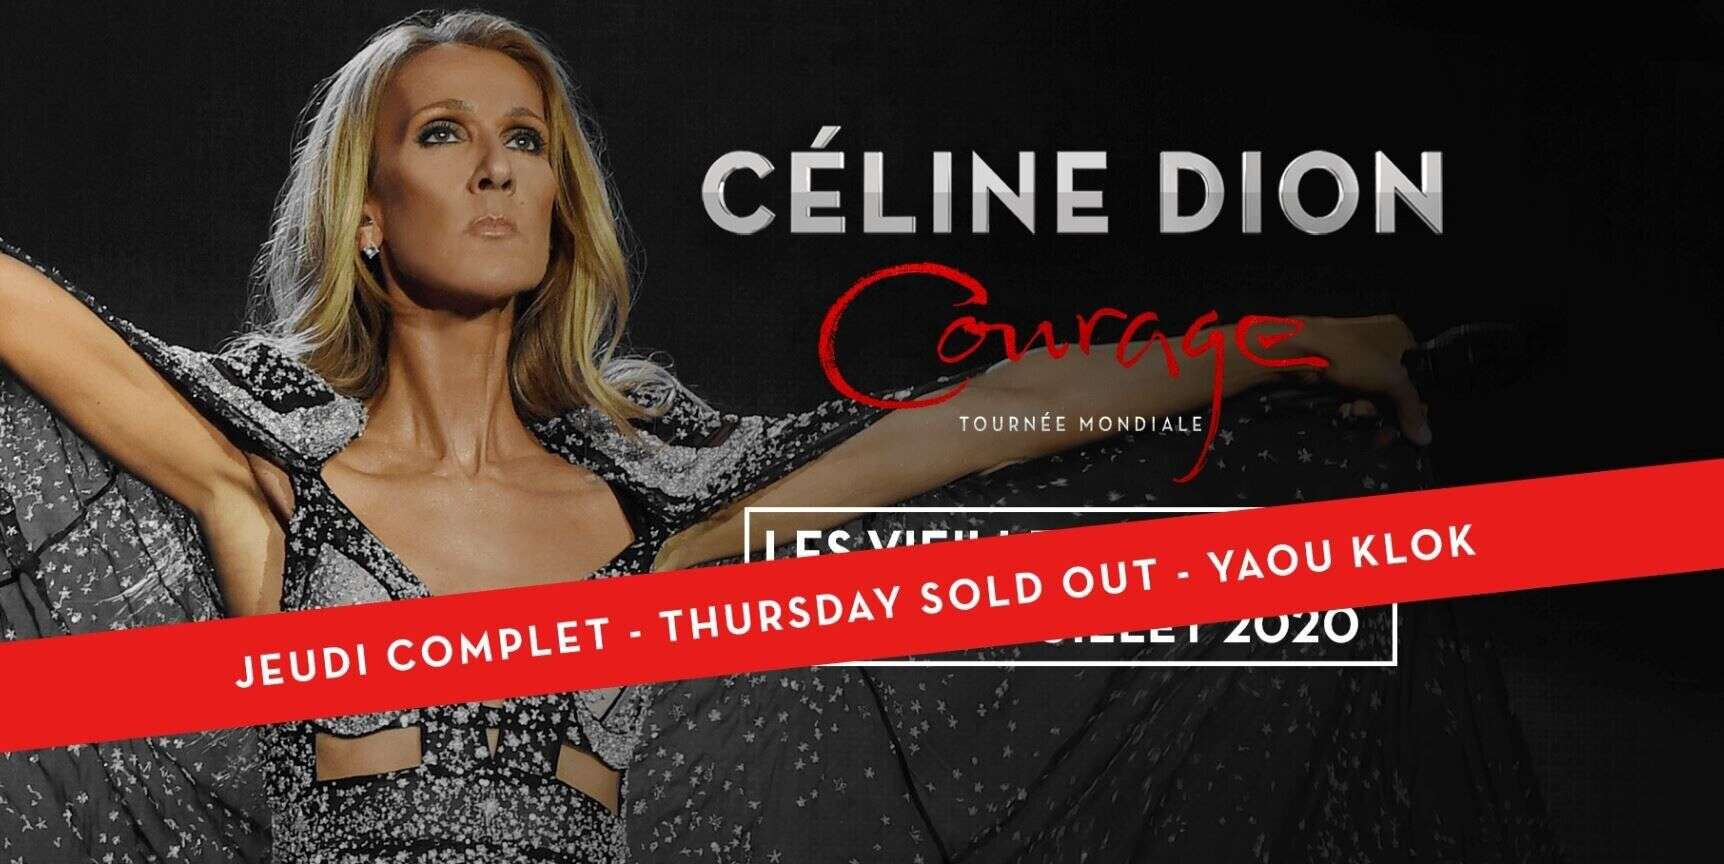 Le concert de Céline Dion aux Vieilles Charrues sold out en moins de dix minutes